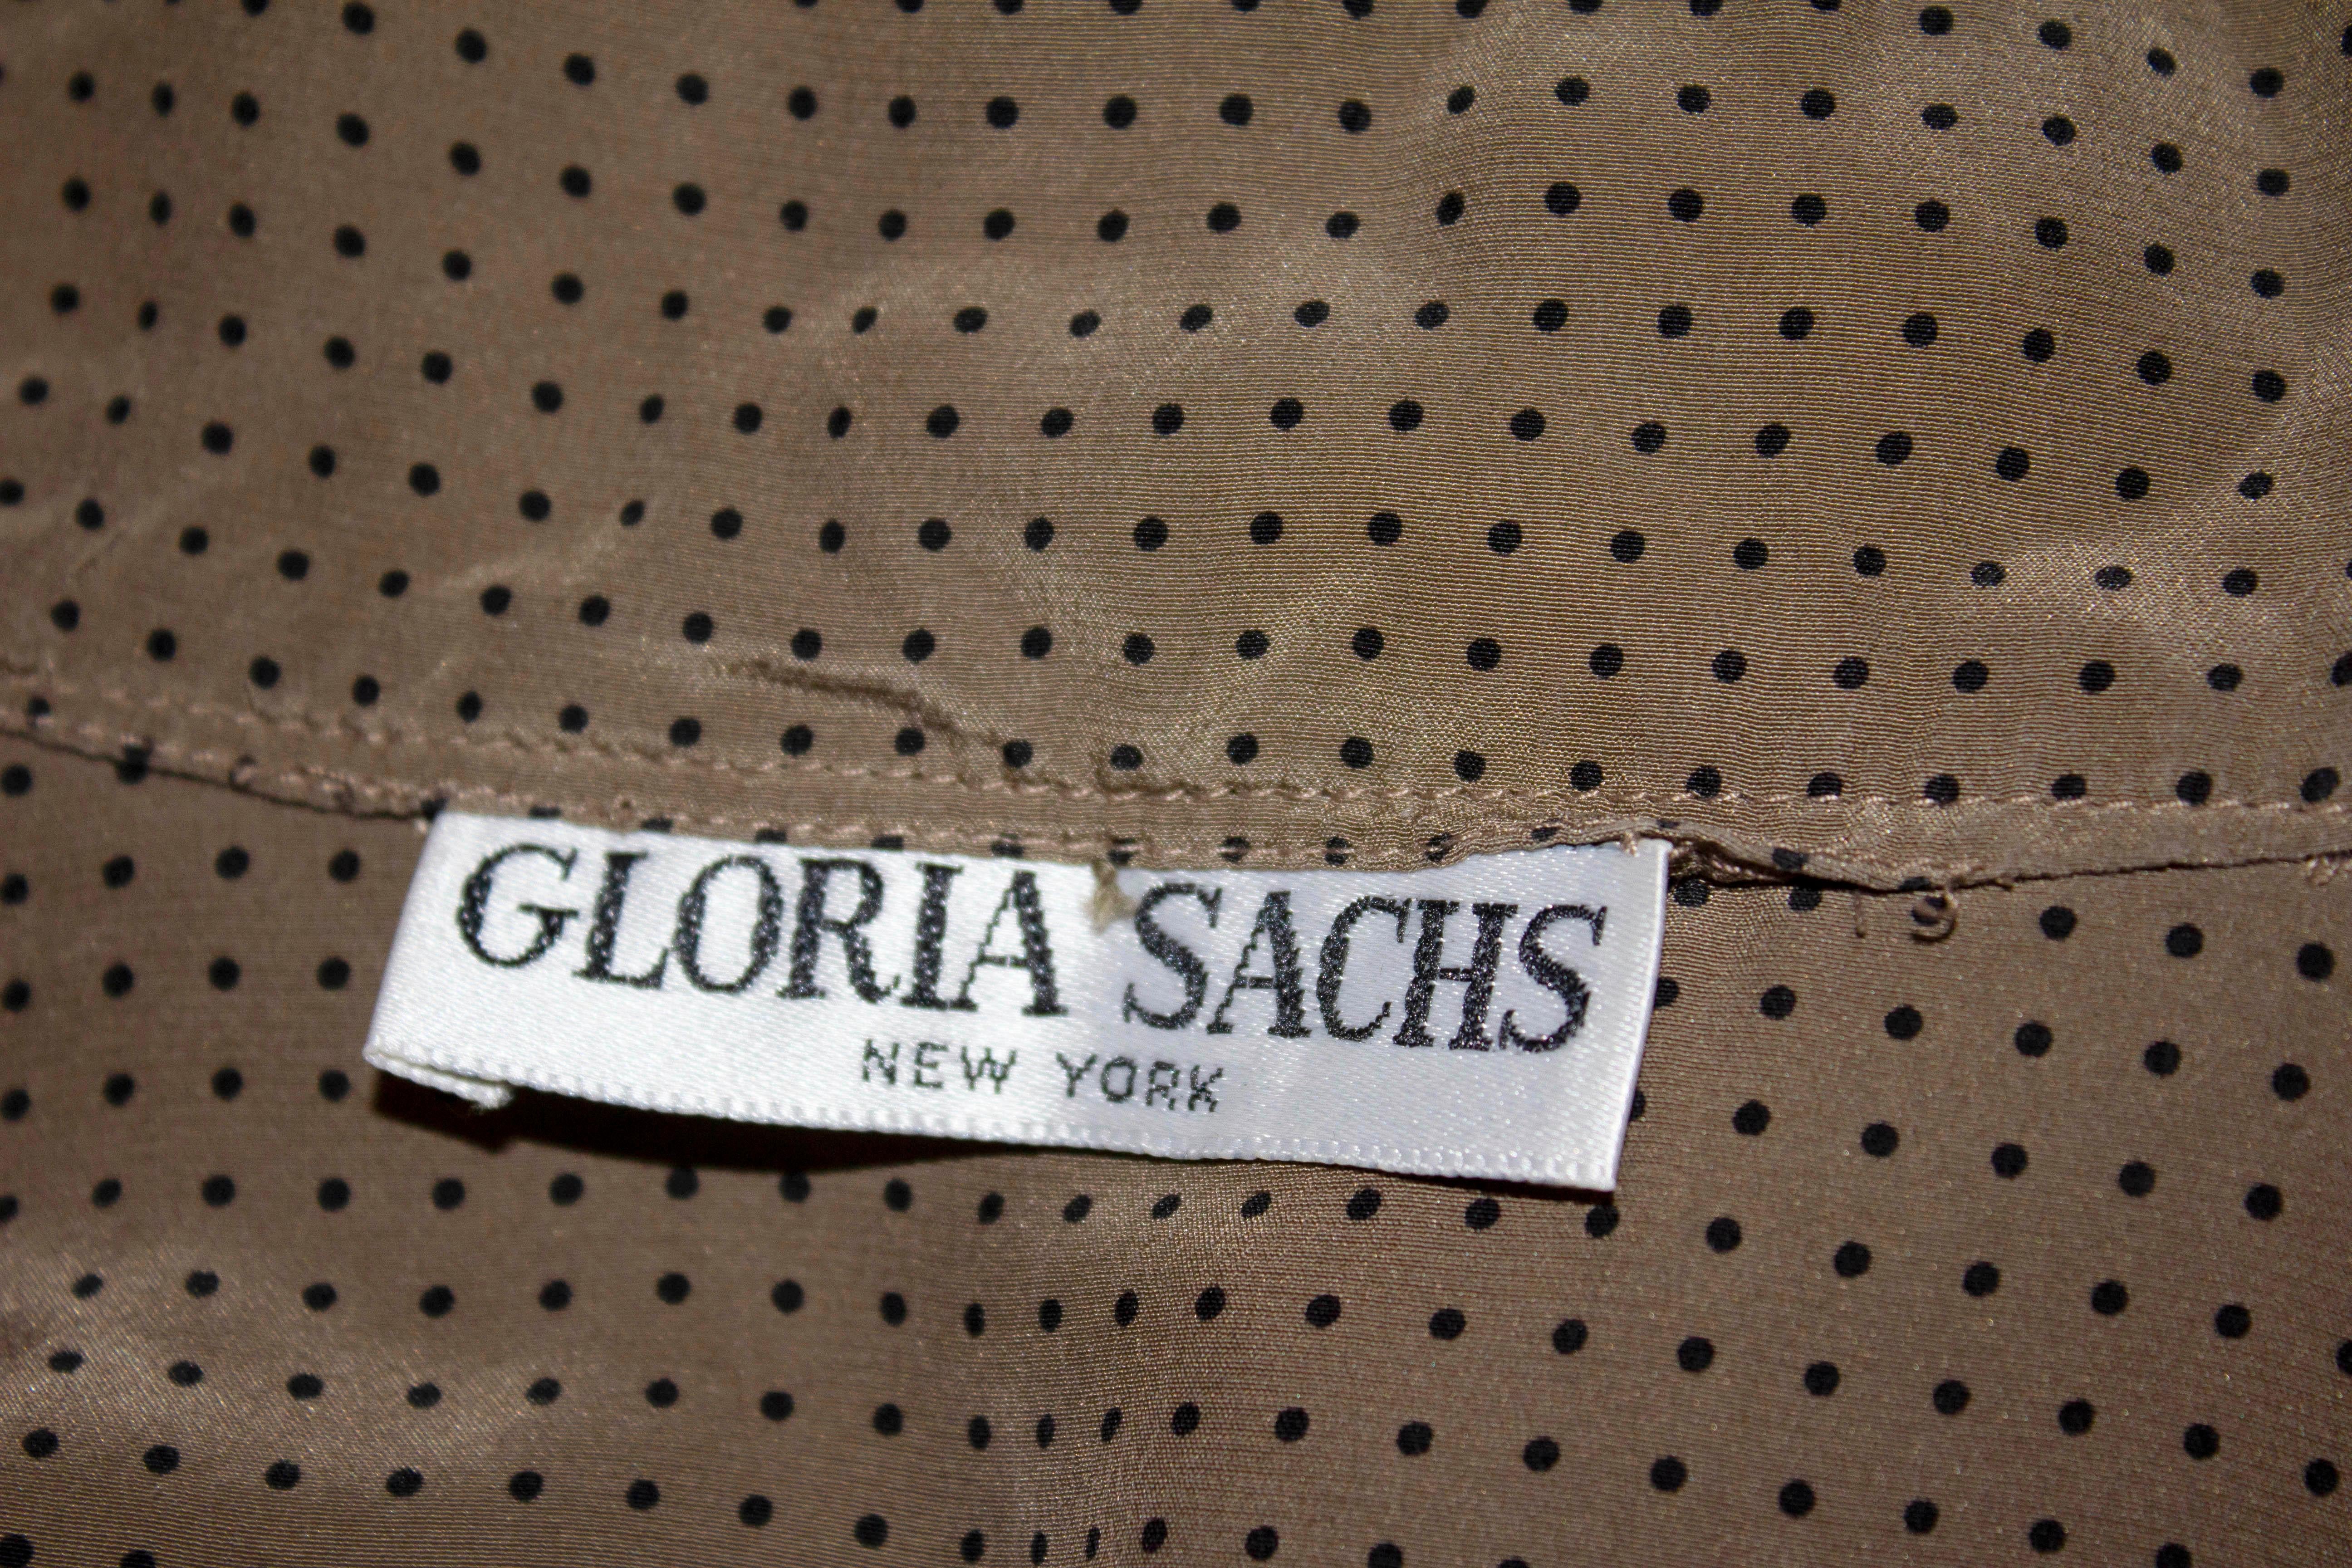 Eine superweiche Vintage-Seidenbluse von Gloria Sachs, New York. Die Bluse ist kaffeefarben mit schwarzen Punkten, einer Manschette mit einem Knopf, einer Öffnung vorne und einer angenähten Krawatte am Hals.
Maße: Büste 36'', Länge 25''